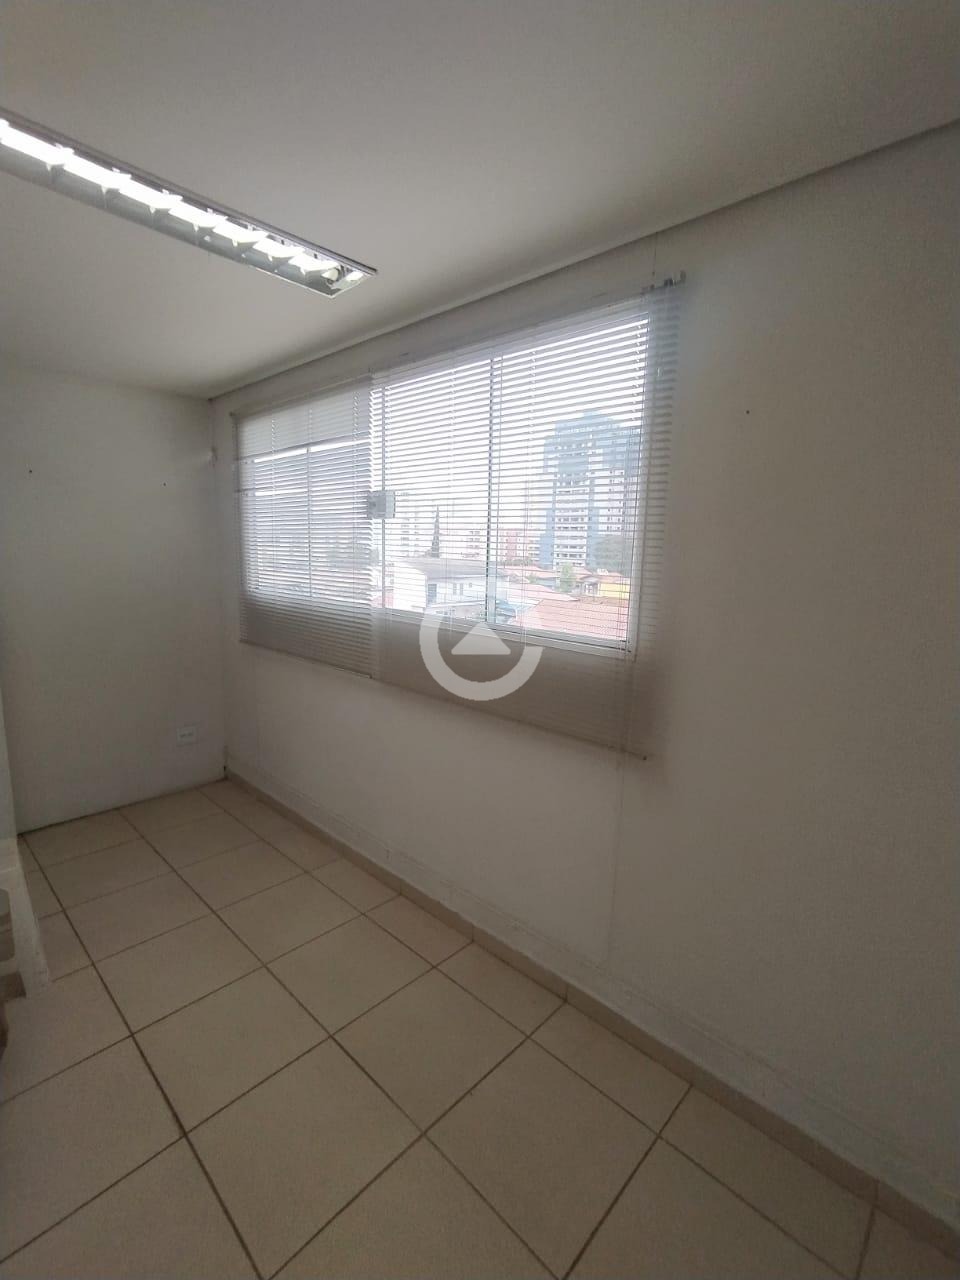 SA046774 | Sala aluguel Mansões Santo Antônio | Campinas/SP